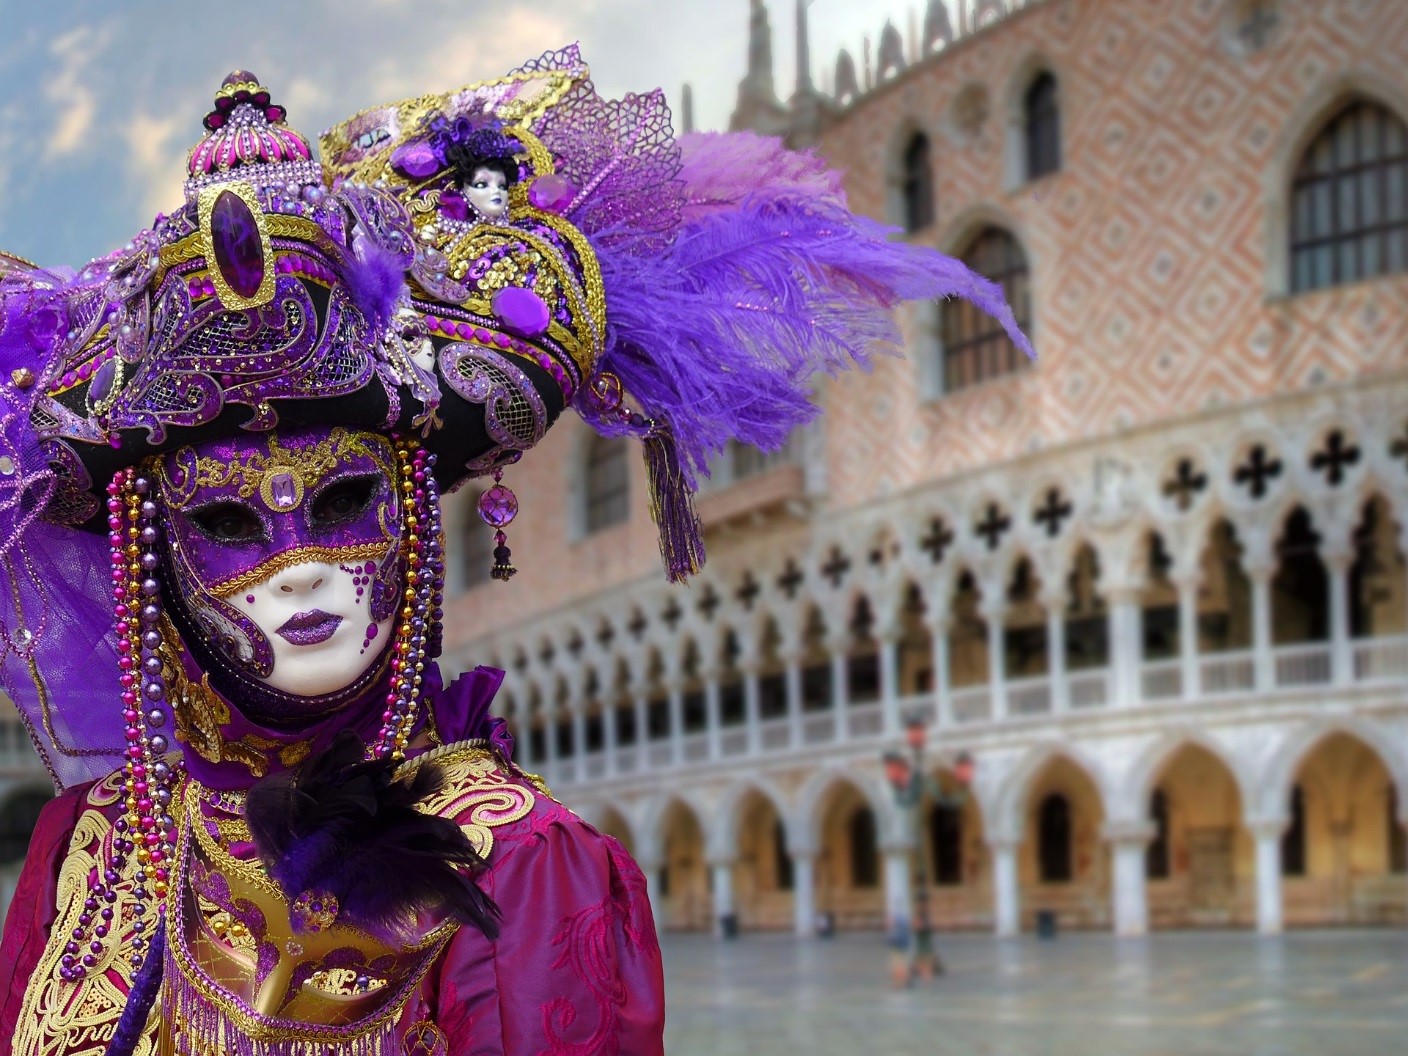 Le maschere artigianali veneziane nella tradizione del Carnevale - Wai Italy